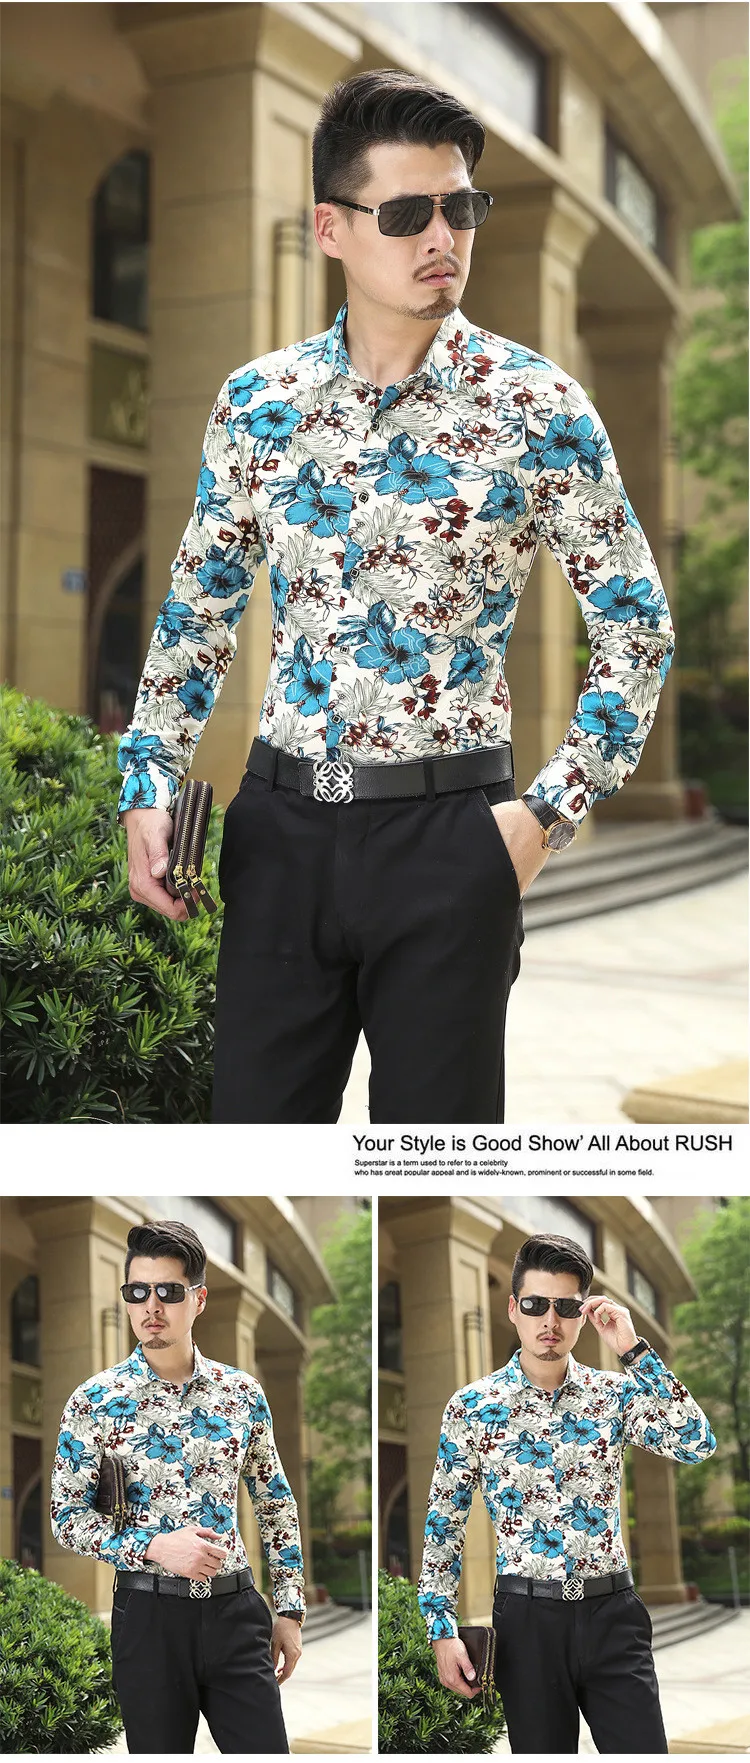 6XL 2019 Новое поступление мужская рубашка Китайский стиль принт с длинным рукавом рубашка мужская Chemise Homme Высокое качество Повседневная